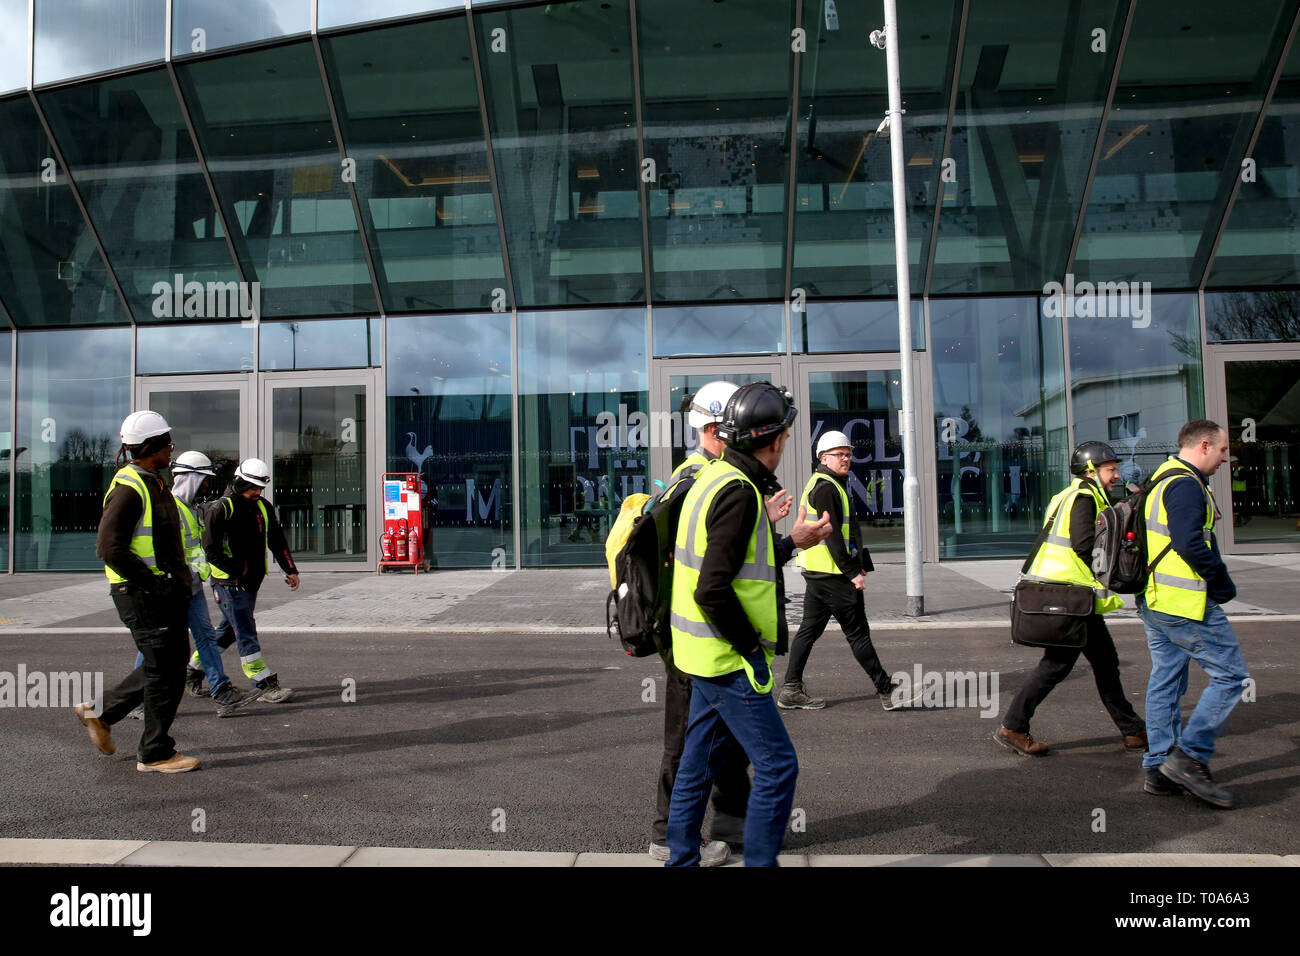 Los trabajadores se consideran fuera de Tottenham Hotspur del nuevo estadio. El club de fútbol han confirmado que jugarán el primer partido en su nuevo estadio de White Hart Lane, contra el Crystal Palace el miércoles 3 de abril de 2019. Foto de stock